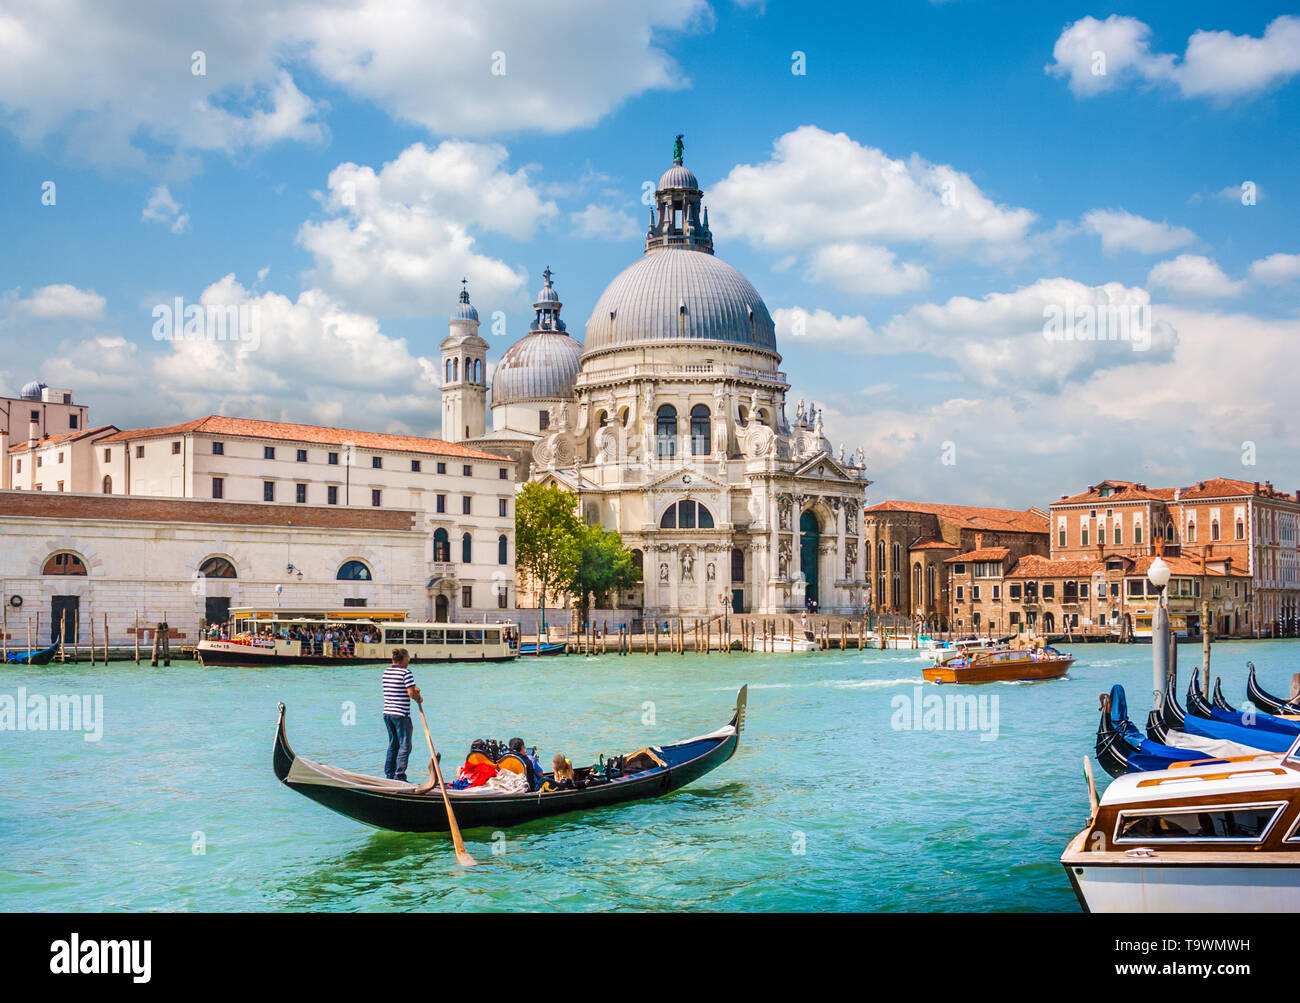 Gondole traditionnelle sur Canal Grande avec la Basilique Santa Maria della Salute en arrière-plan, Venise, Italie Banque D'Images